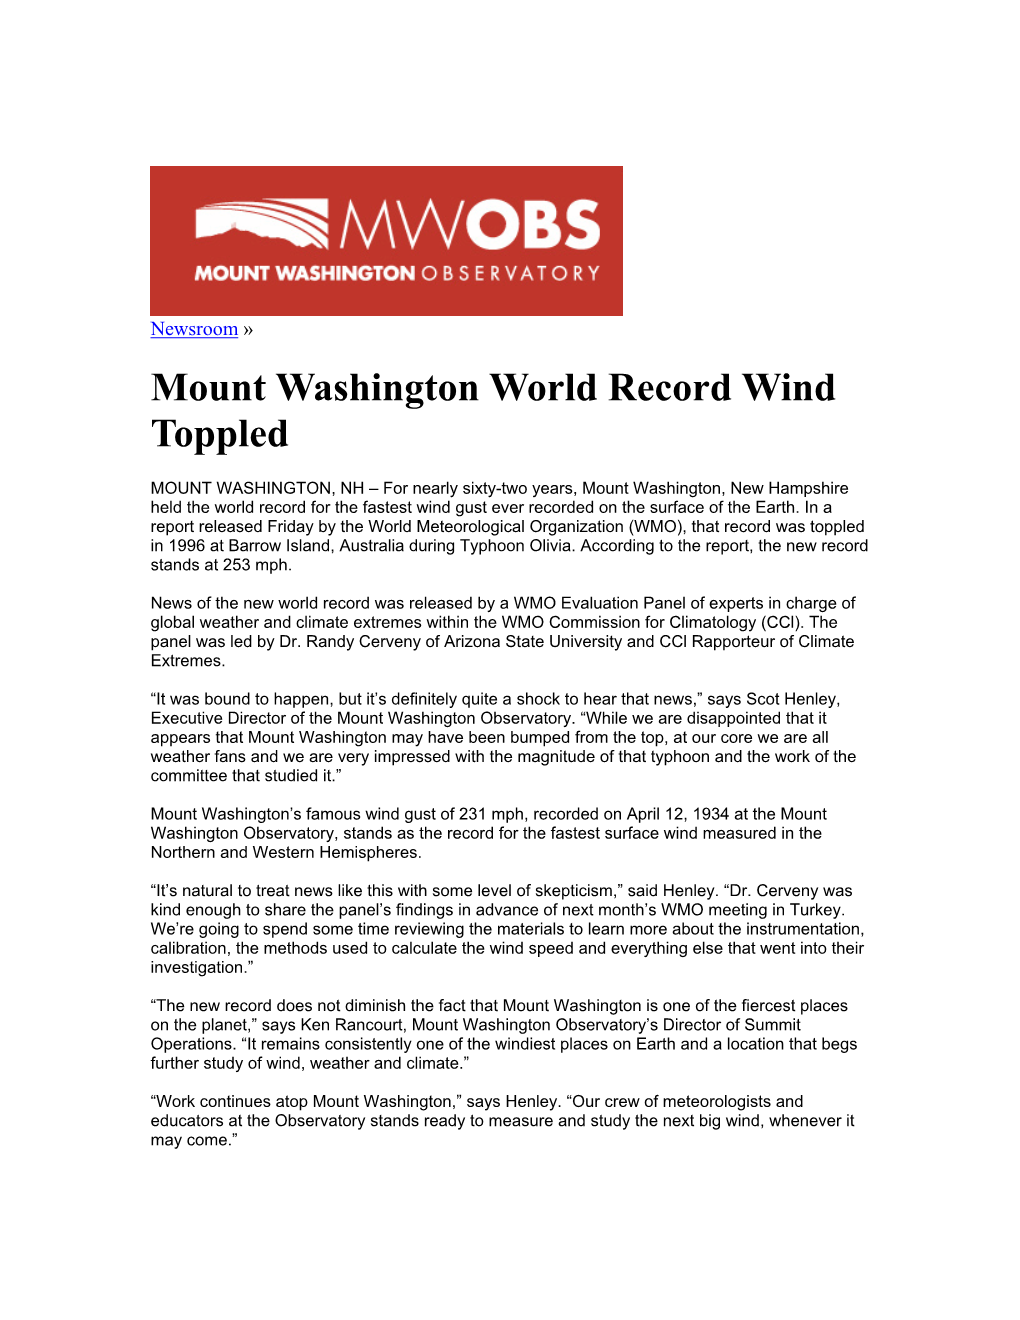 Mount Washington World Record Wind Toppled